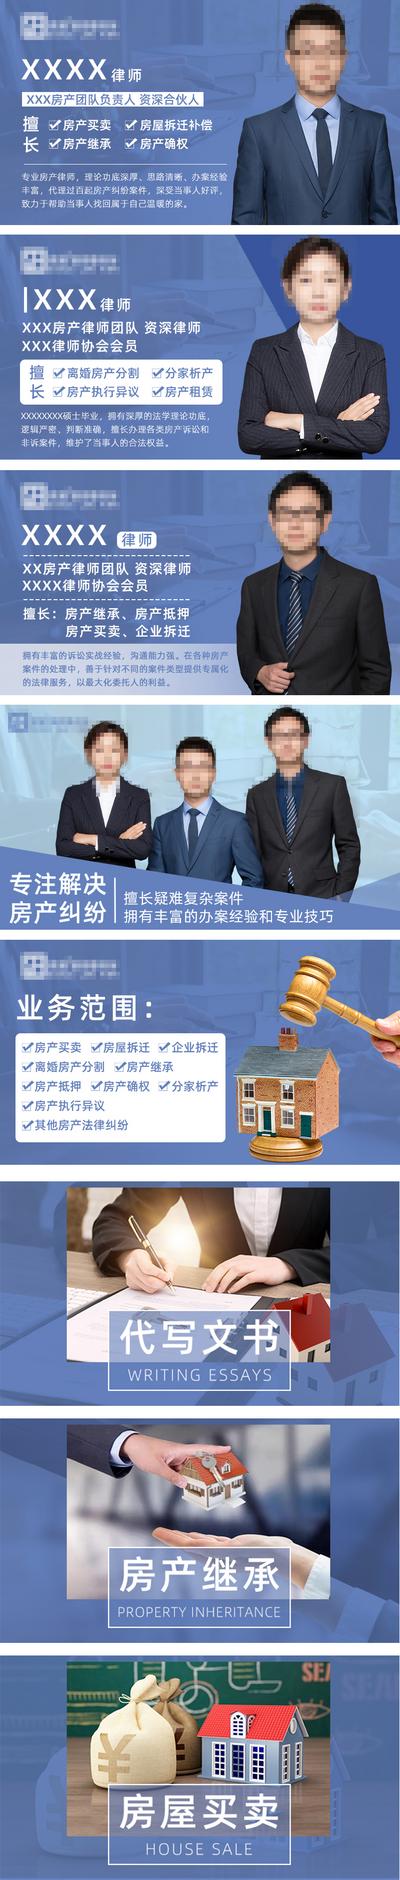 南门网 电商海报 淘宝海报 banner 律师 法律 事务所 人物 轮播图